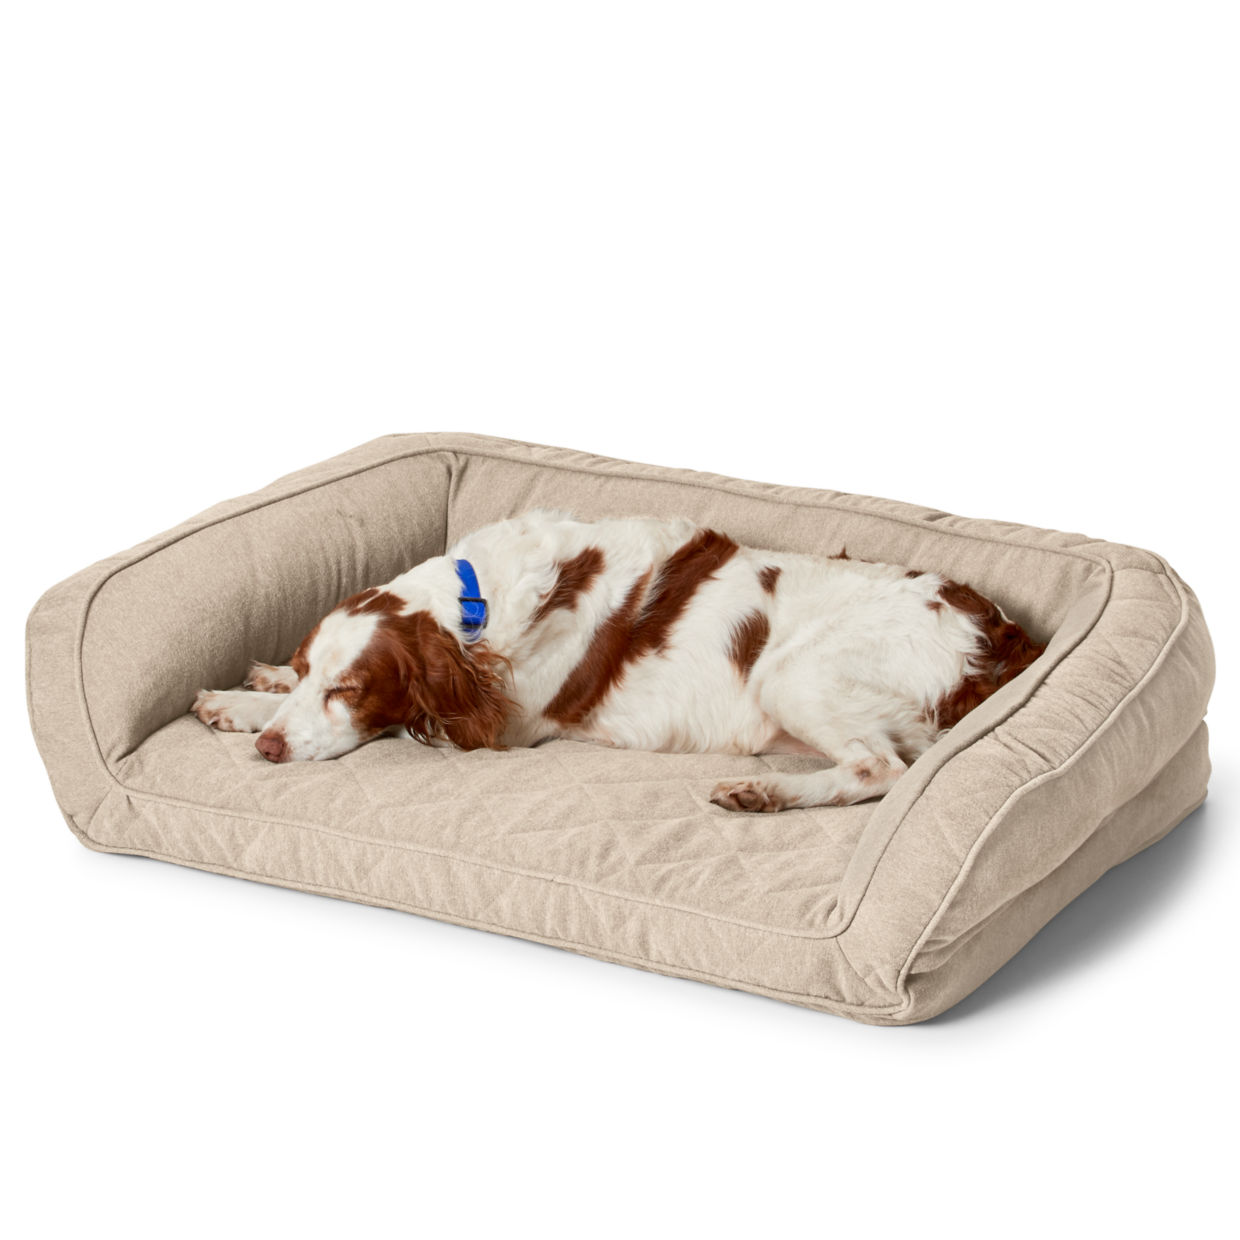 Orvis AirFoam Bolster Dog Bed